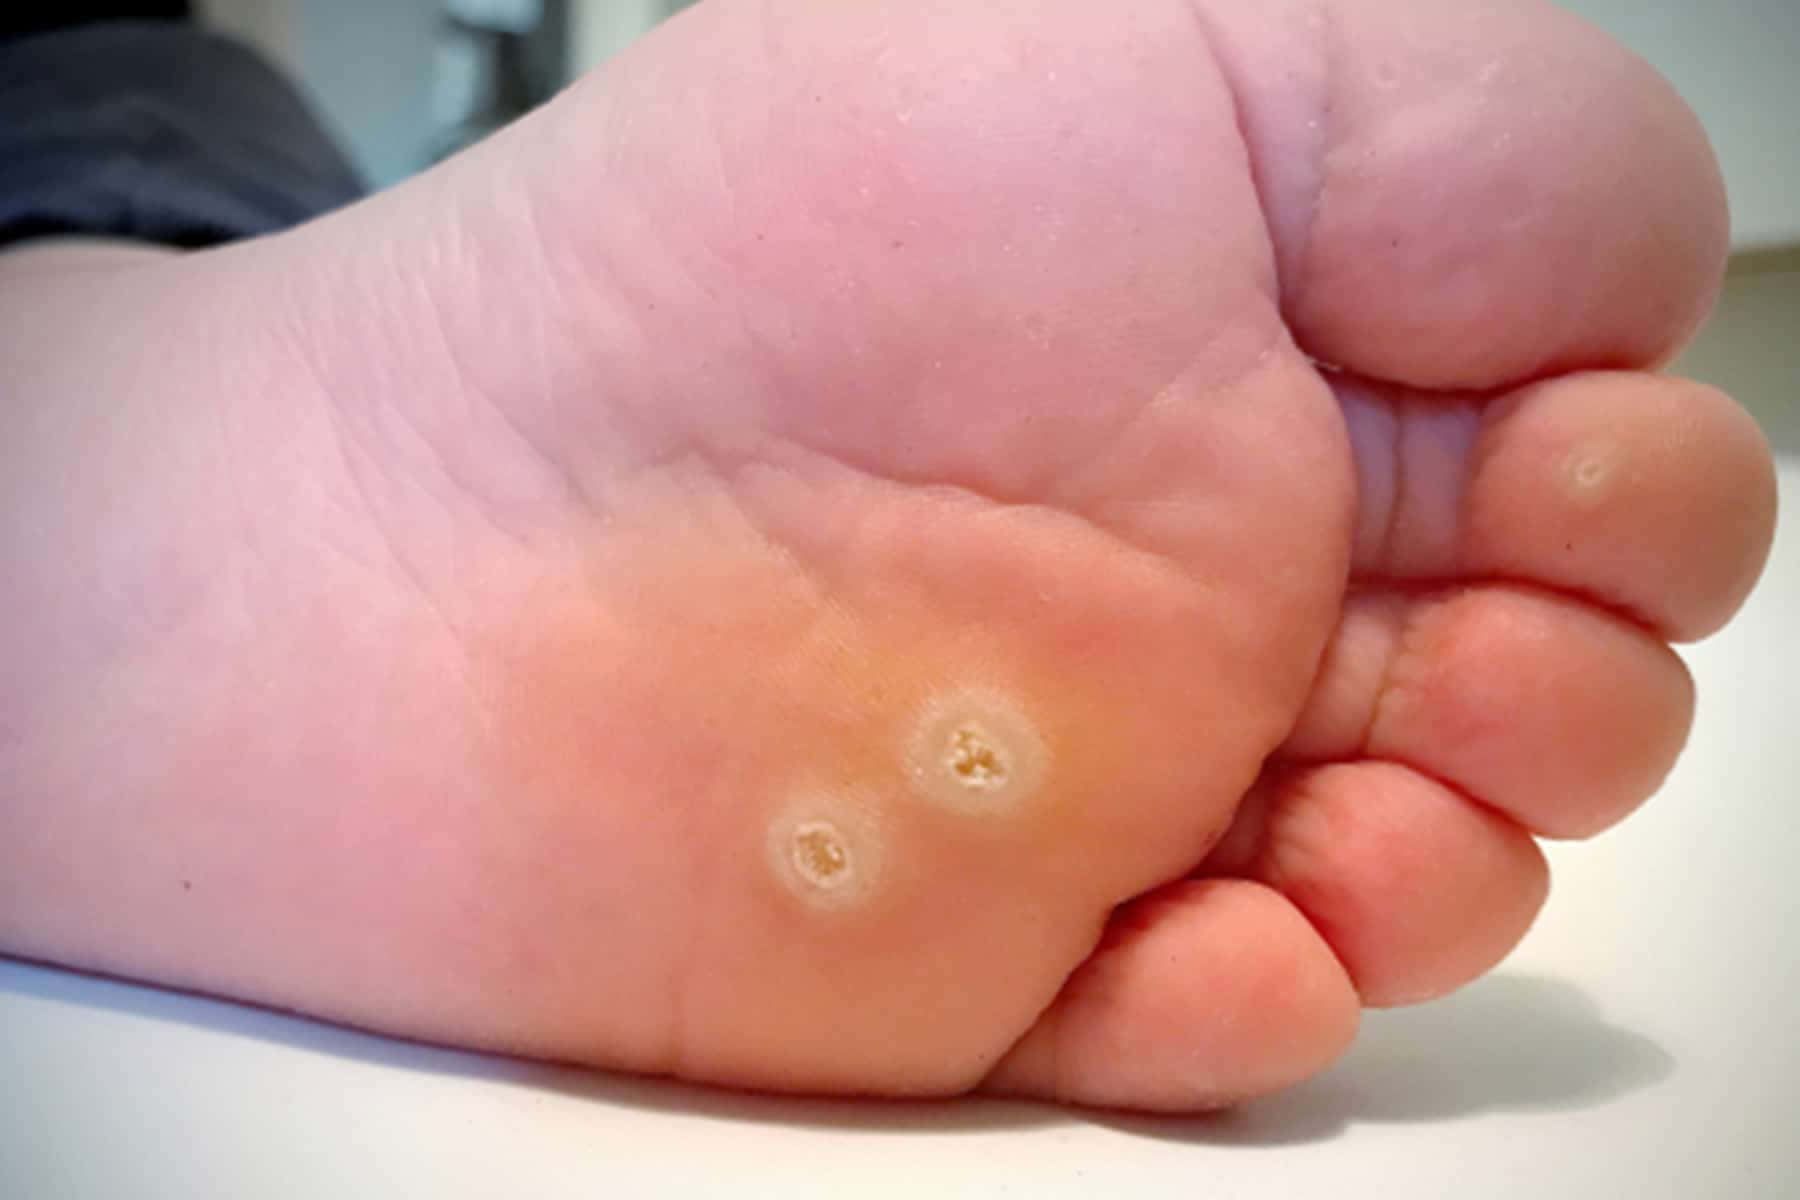 Et barns fod med en lille hvid plet på det.